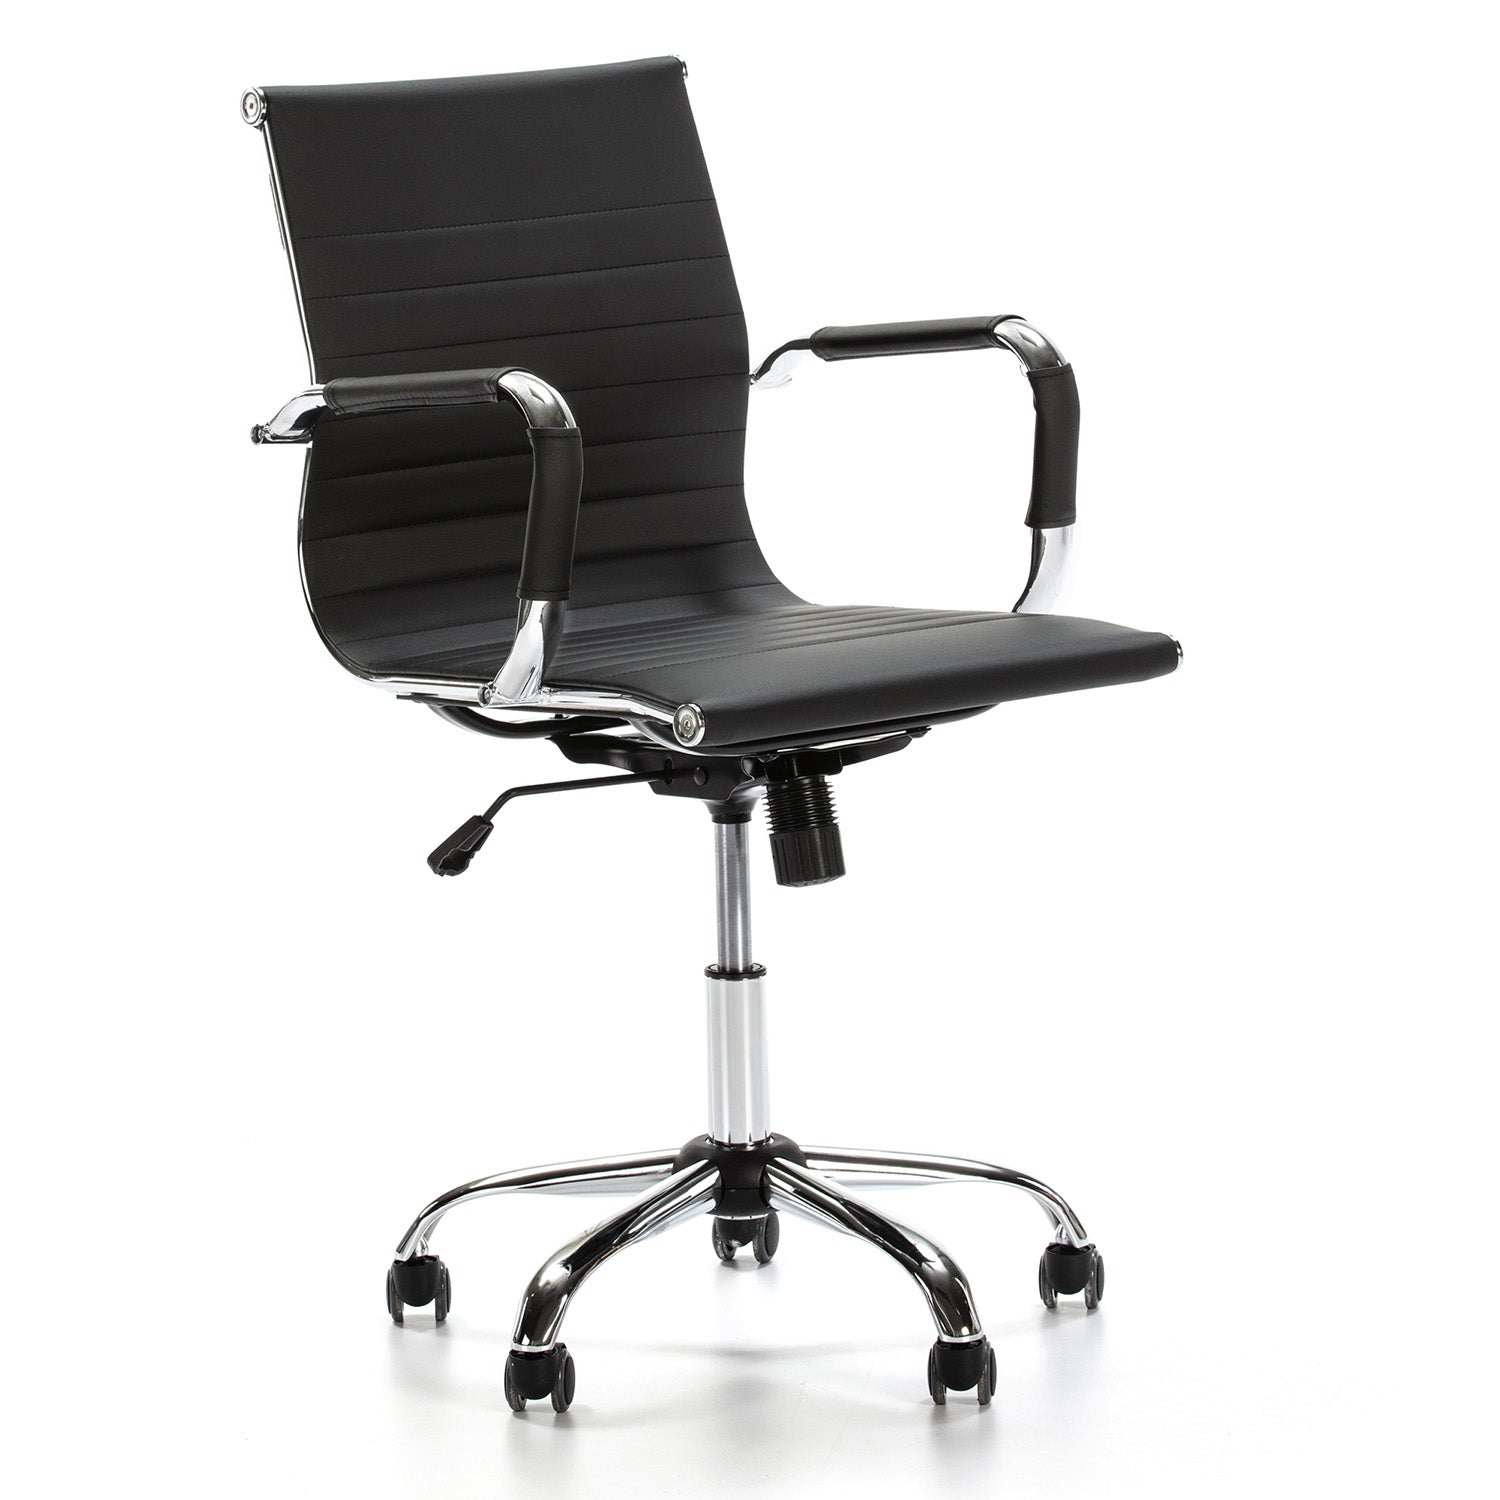 Poltrona sedia ufficio ergonomica schienale alto in ecopelle colore TORTORA